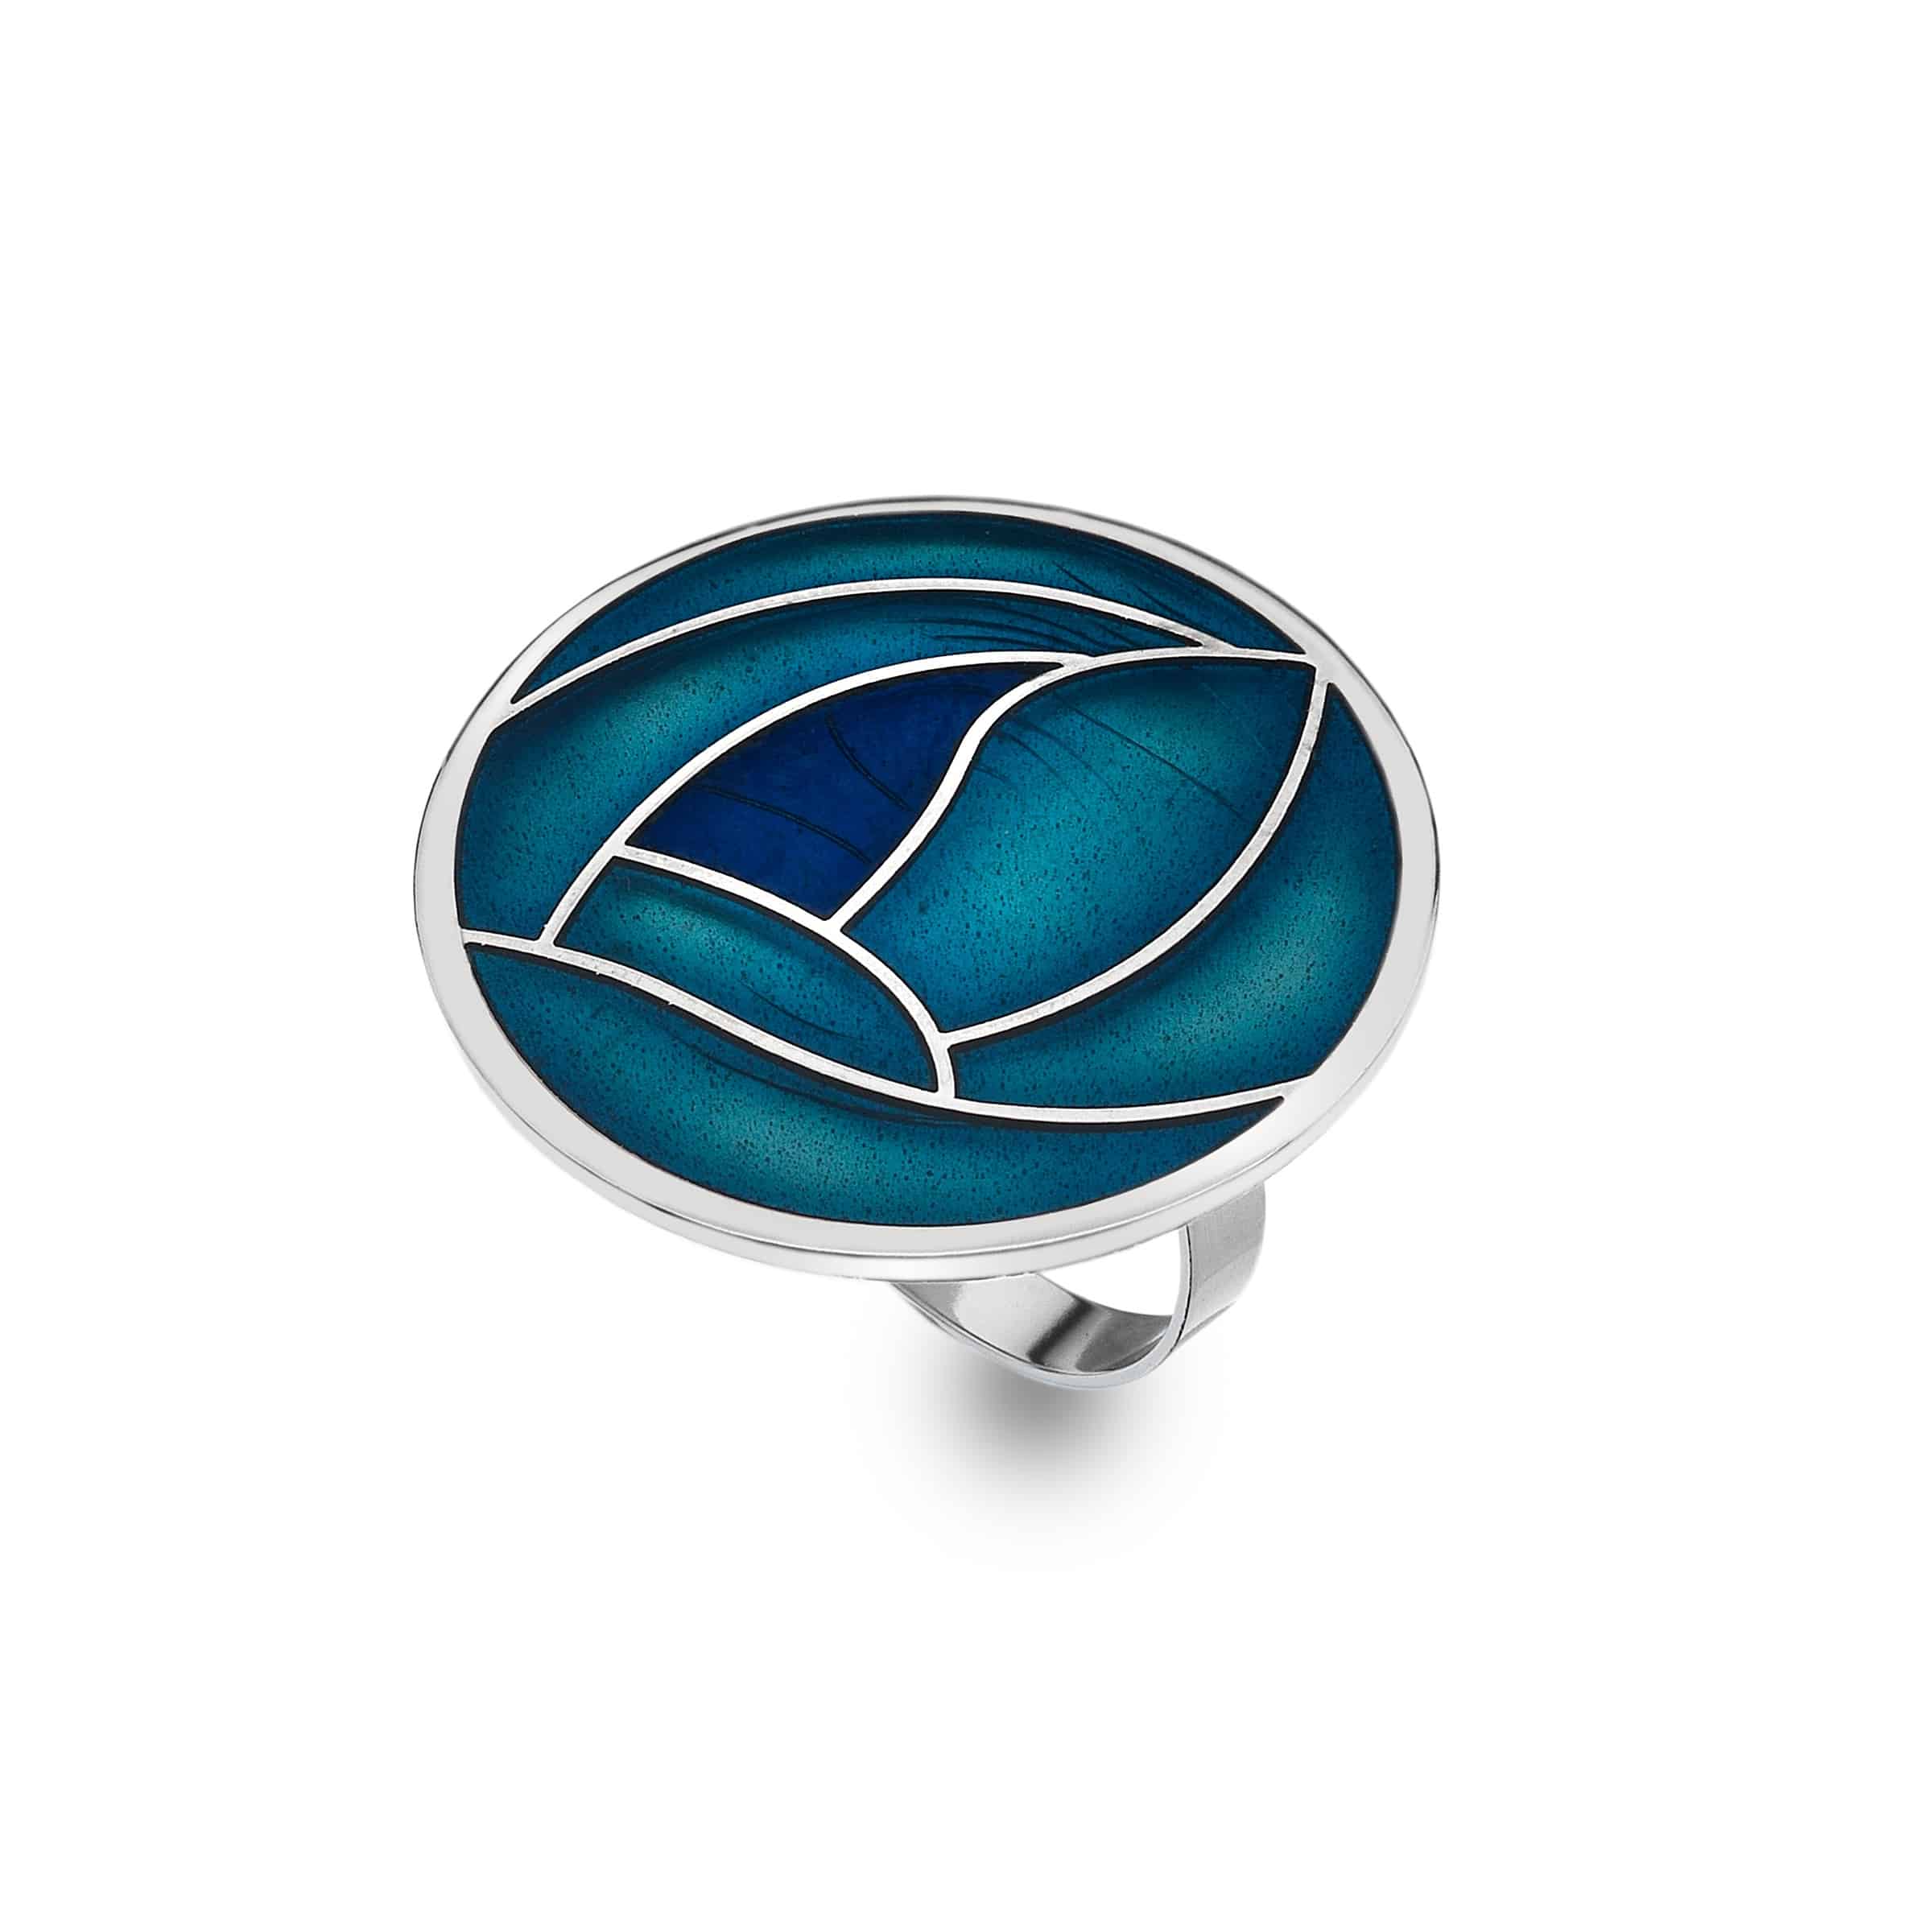 Turquoise Mackintosh Enamel Rose Scarf Ring – The Perfect Scottish